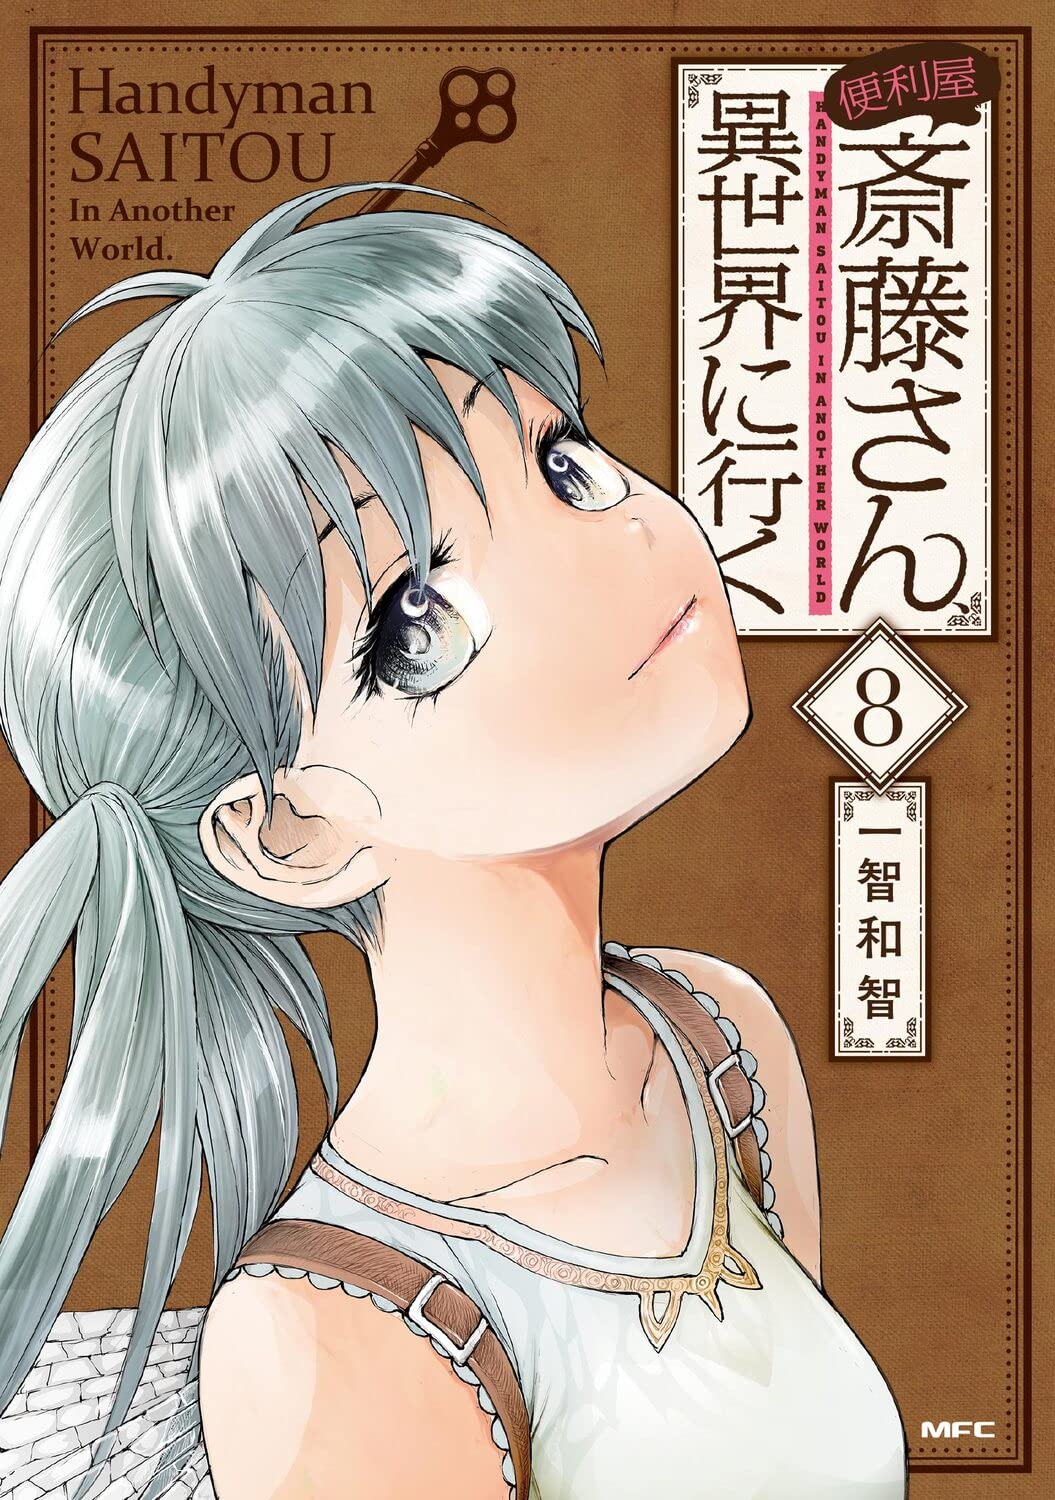 DVD Anime Benriya Saitou-san, Isekai Ni Iku (Handyman Saito in Another  World)